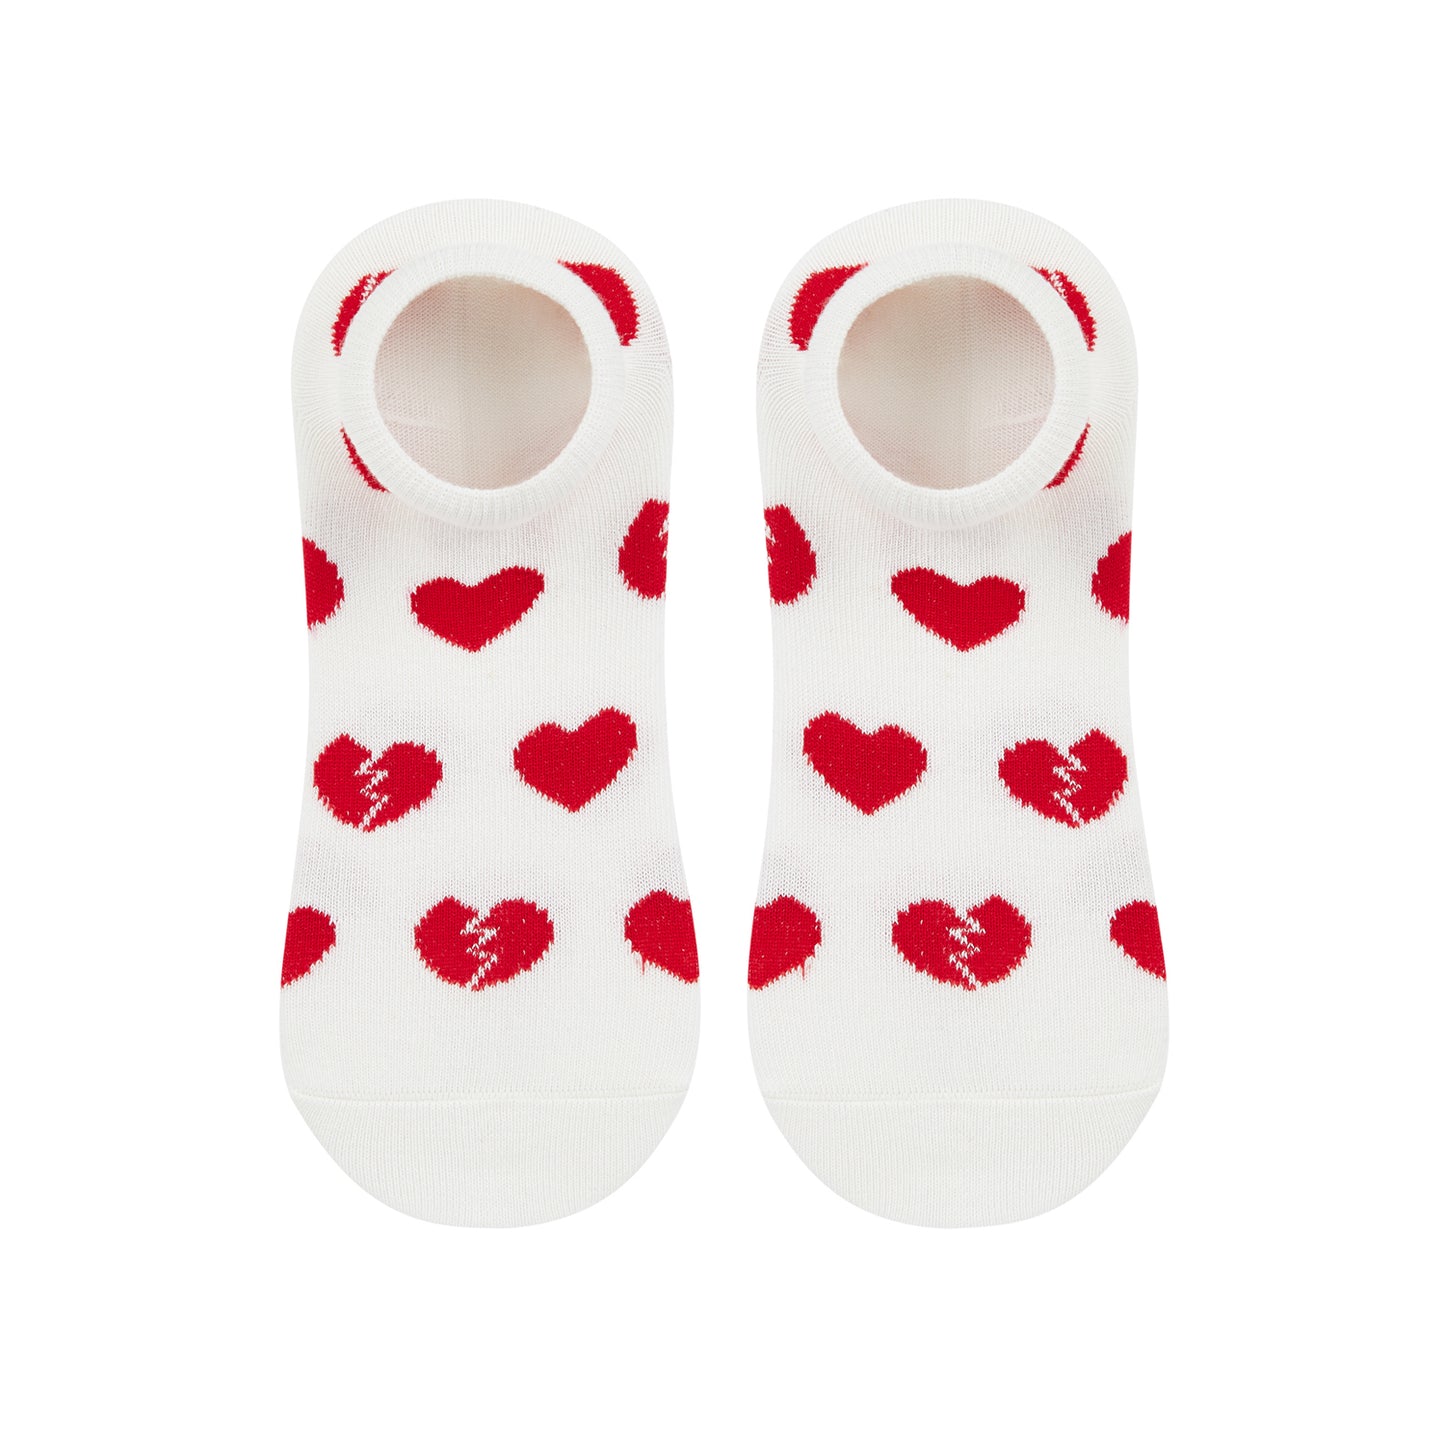 Heartbreak Printed Ankle Socks - IDENTITY Apparel Shop